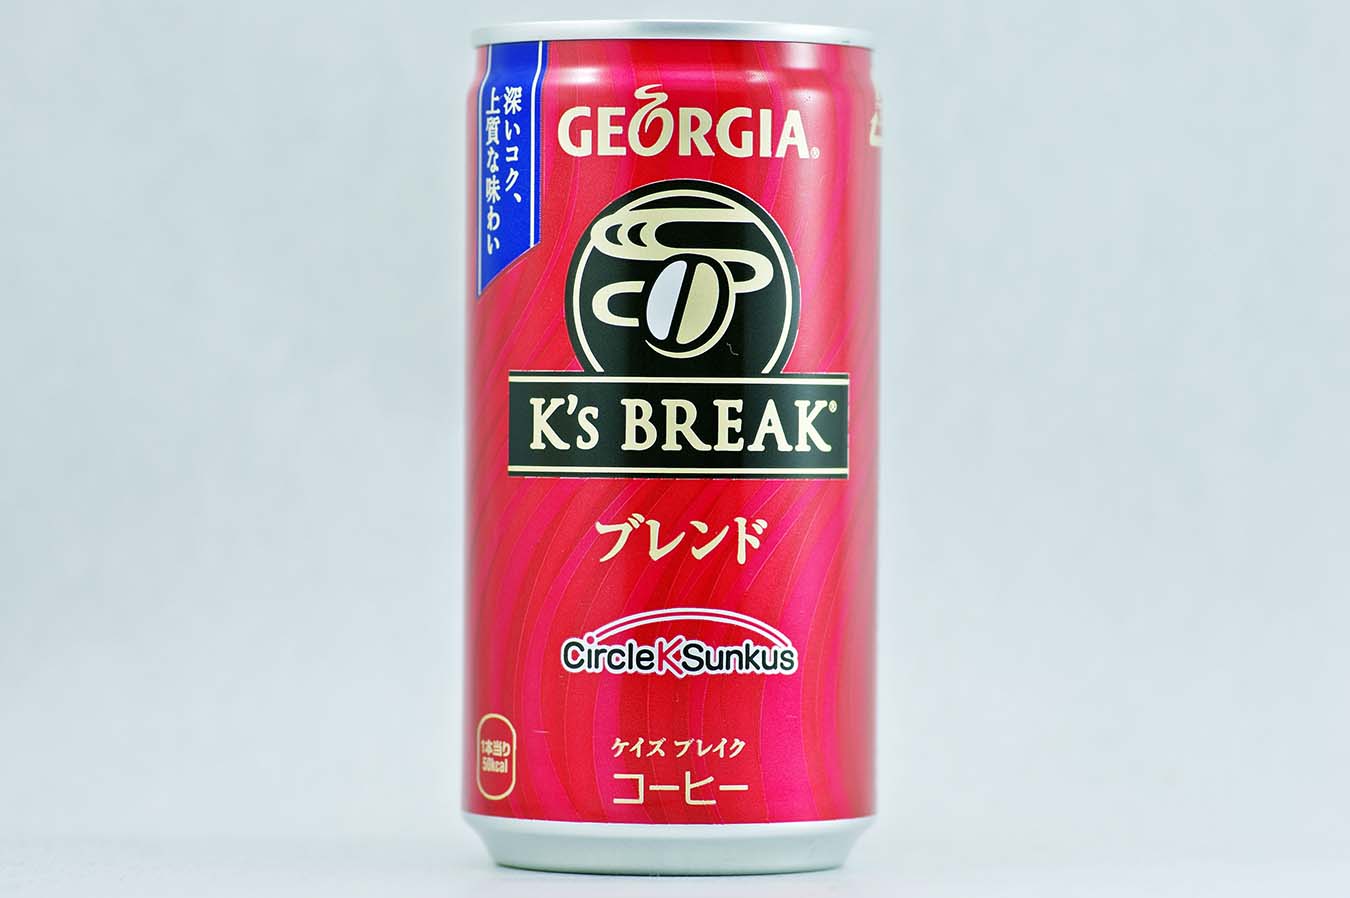 GEORGIA K's BREAK ブレンド 2015年10月